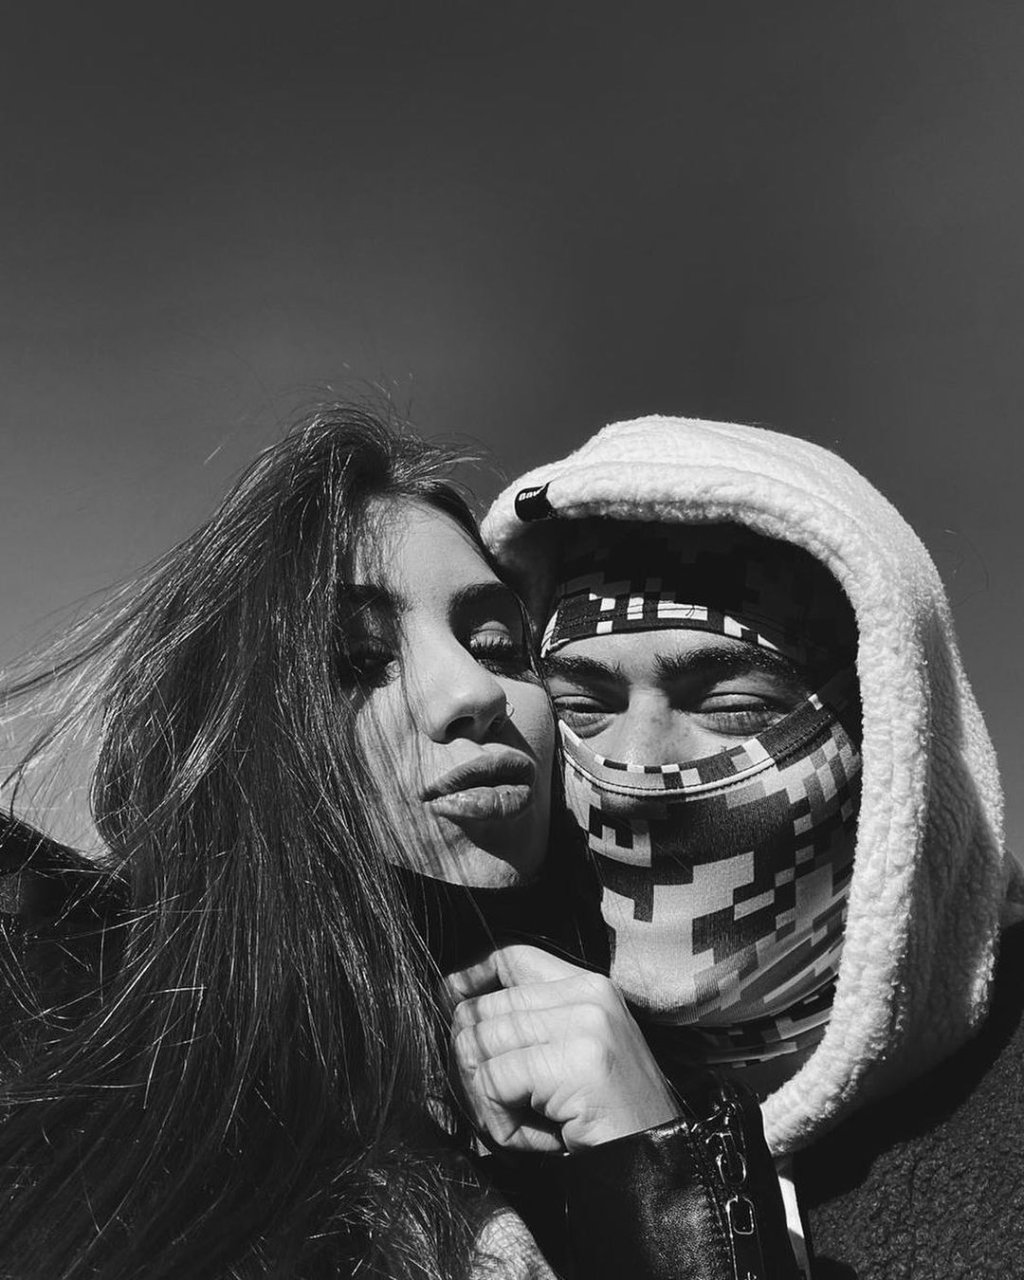 Selfie em preto e branco de Maria Lina e Whindersson Nunes; eles estão com os rostos encostados; Maria está fazendo biquinho enquanto o rosto de Whindersson está coberto por um tecido deixando apenas os olhos visíveis